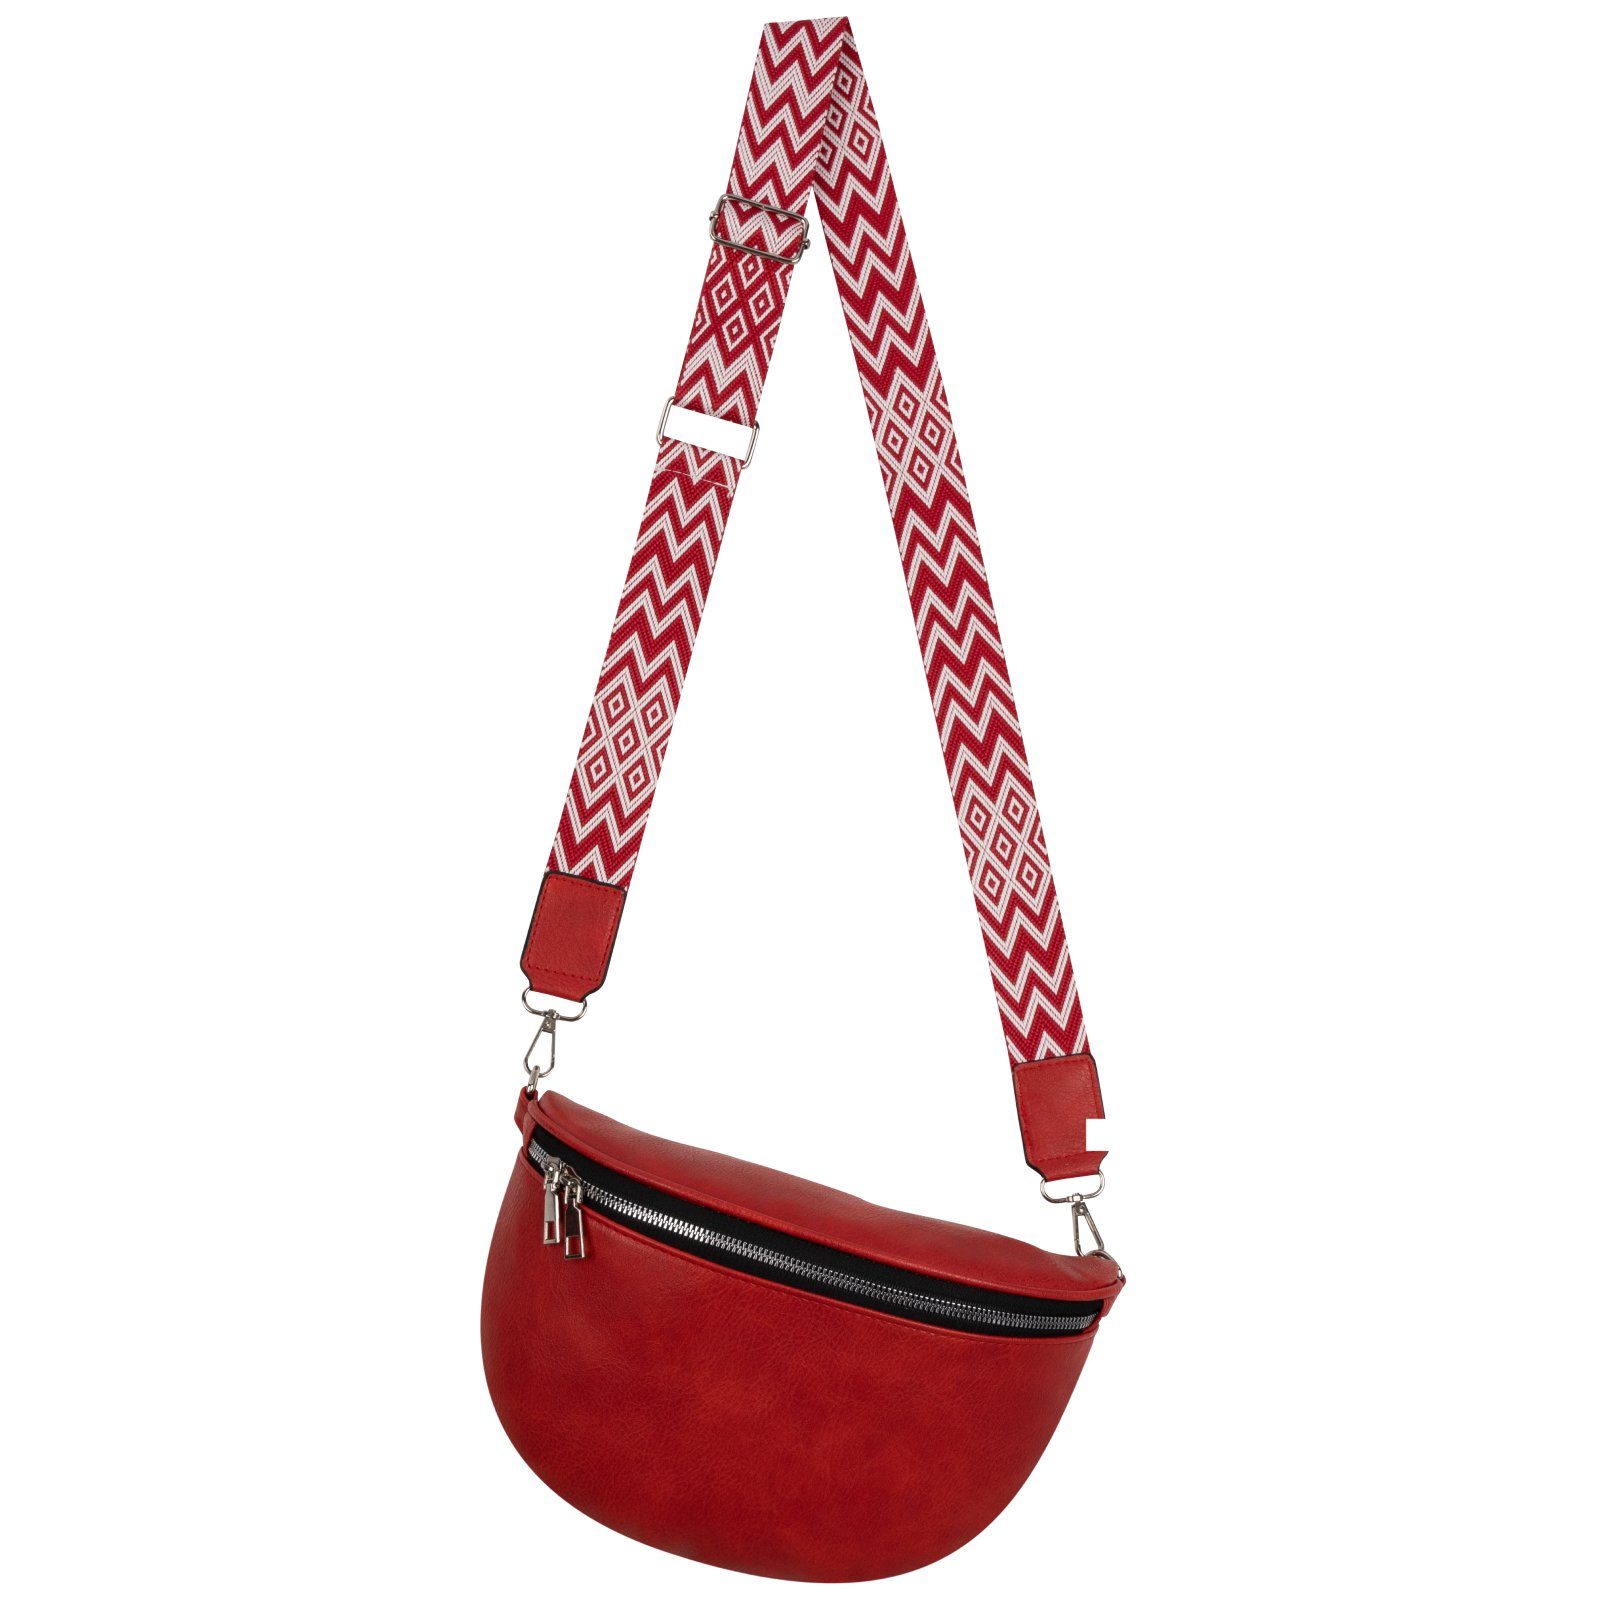 Italy-De, Gürteltasche Umhängetasche Kunstleder tragbar Hüfttasche Crossbody-Bag Umhängetasche als EAAKIE RED CrossOver, Bauchtasche Schultertasche,